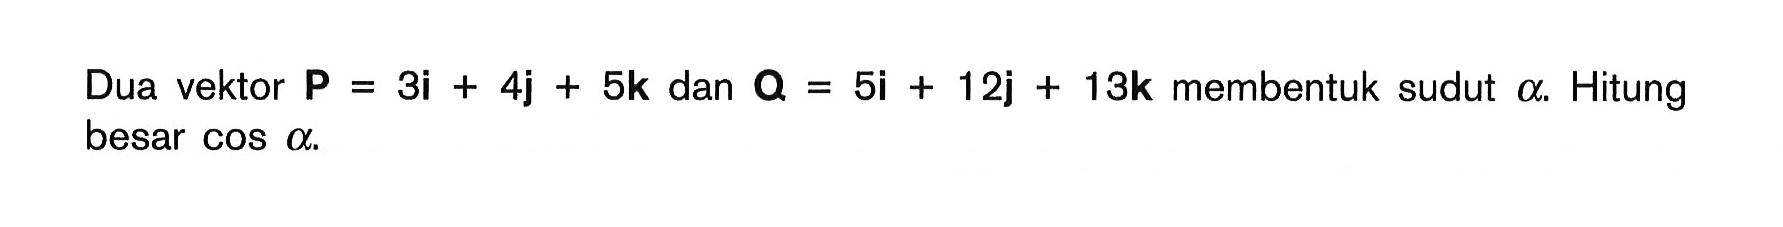 Dua vektor P = 3i + 4j + 5k dan 0 = 5i + 12j + 13k membentuk sudut 0. Hitung besar COS alpha.